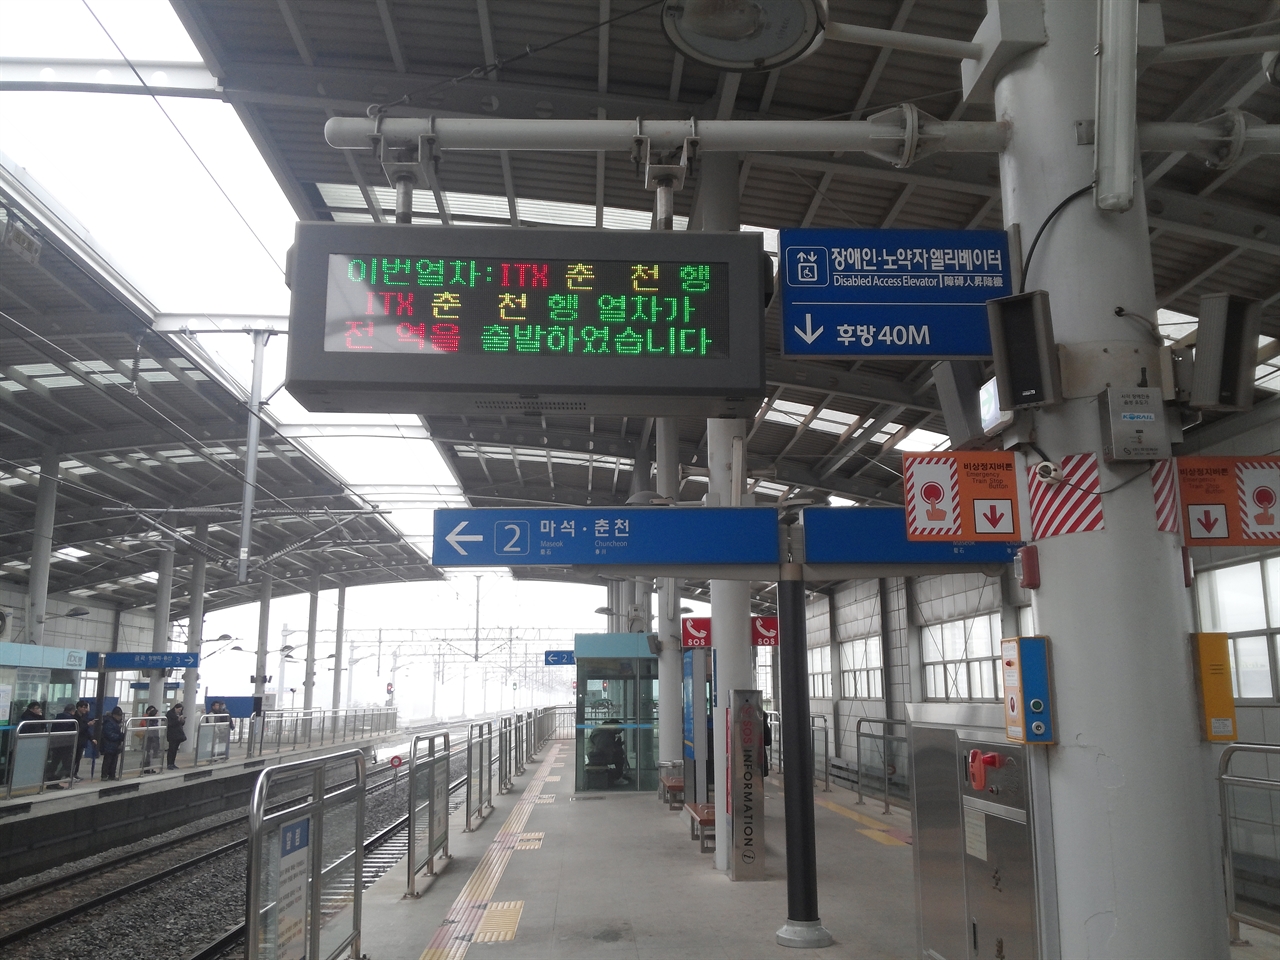 ITX 청춘 열차를 타기 위해 평내호평역에서 기다리고 있다.